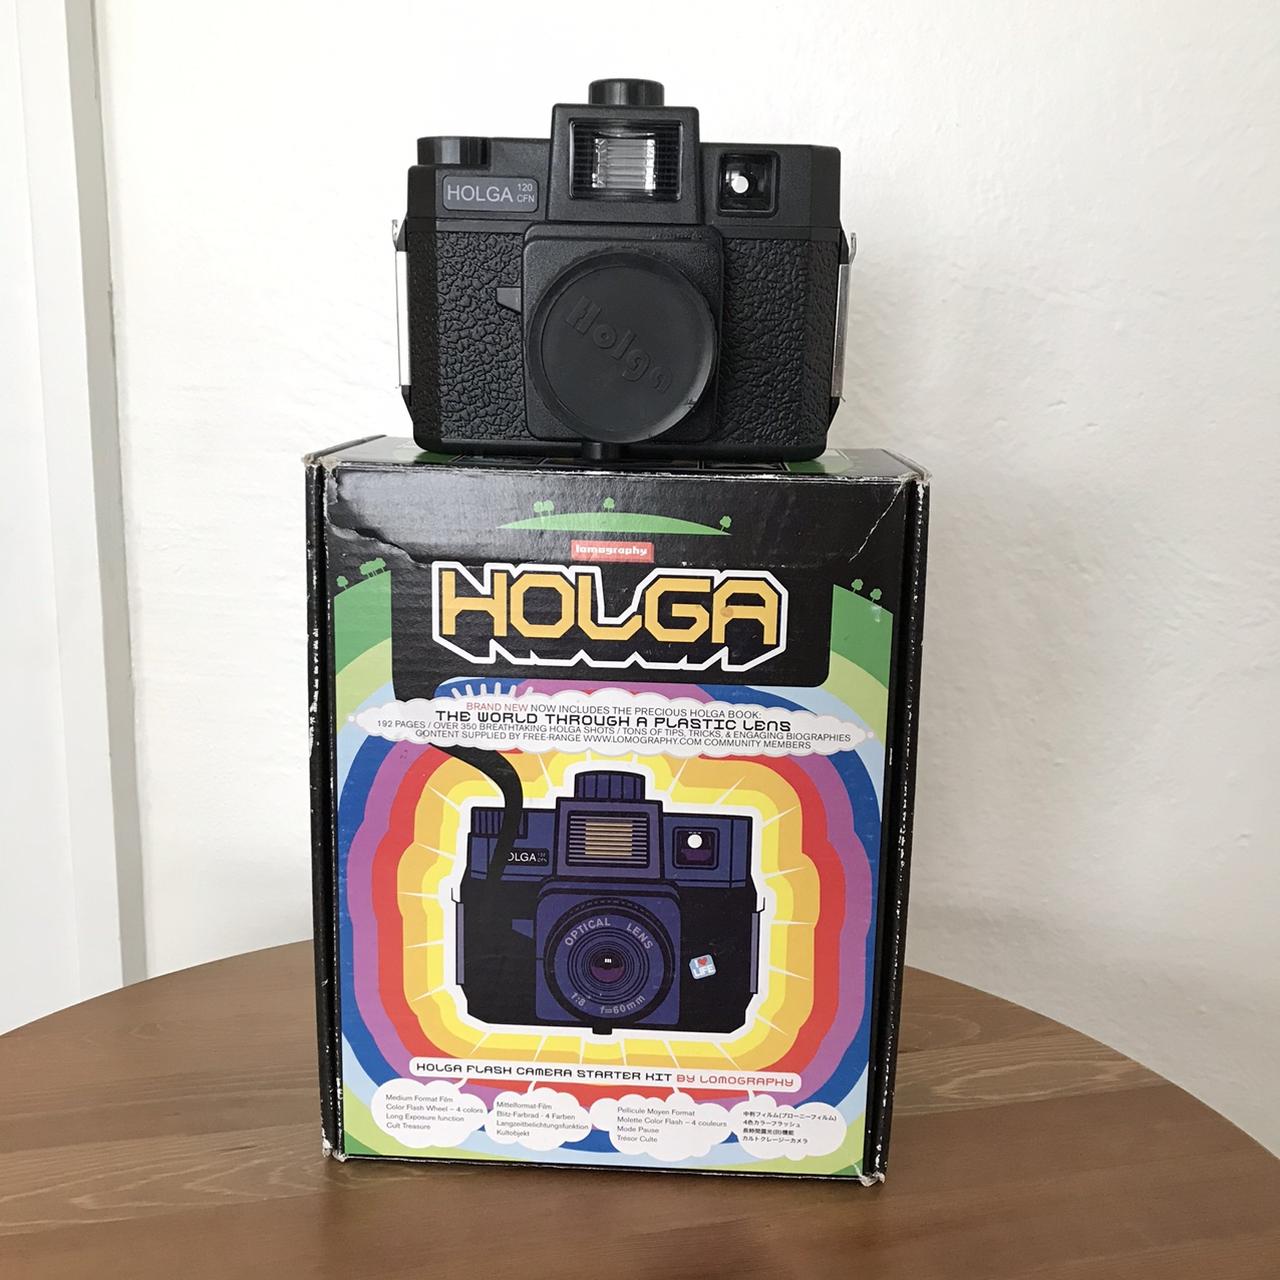 Product Image 1 - Holga 130 CFN colorflash camera